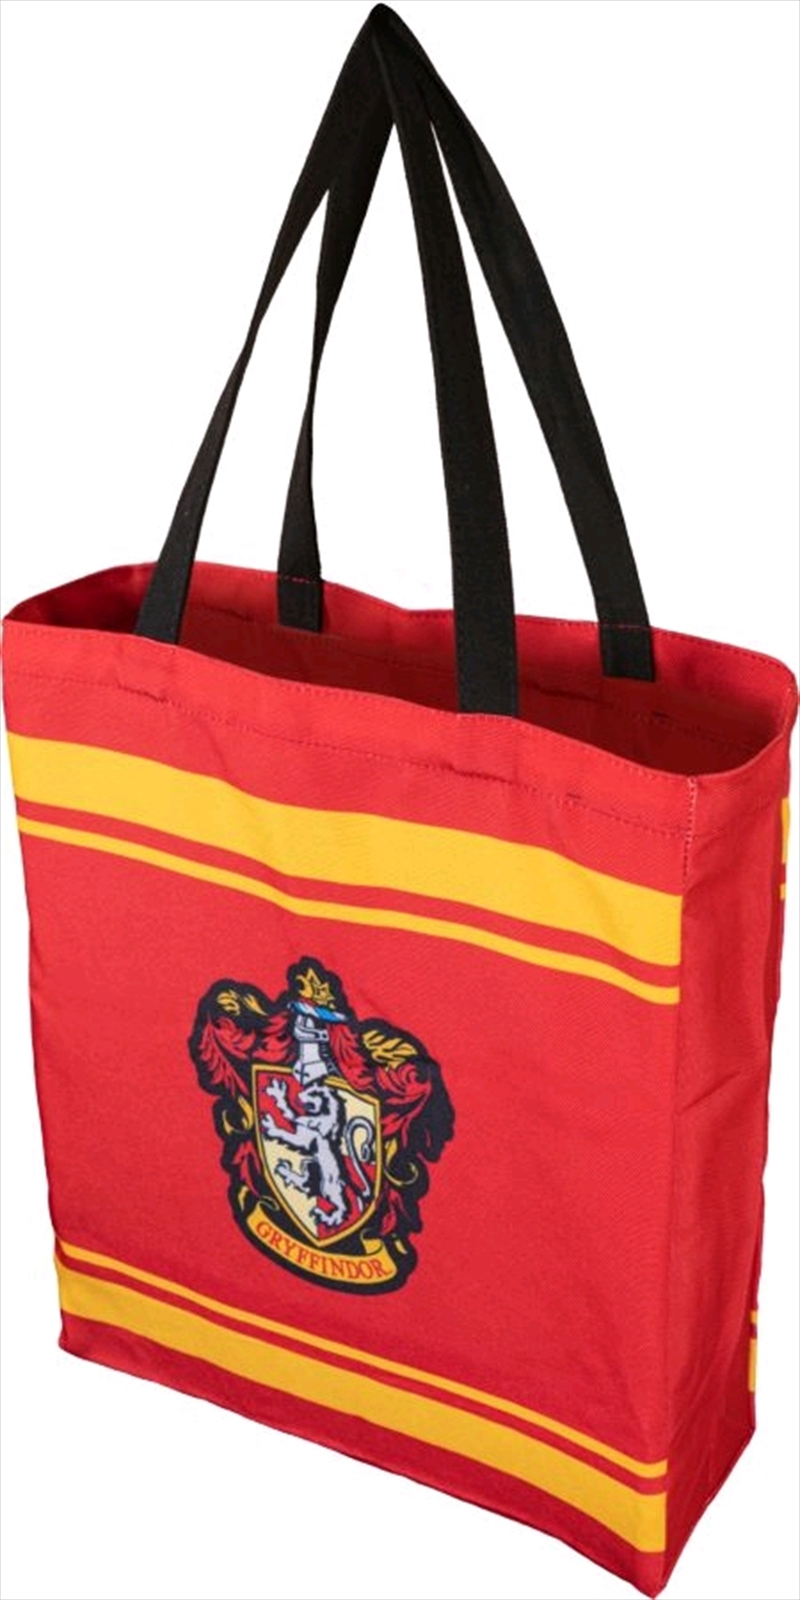 Harry Potter - Gryffindor Crest Shopper Bag | Apparel